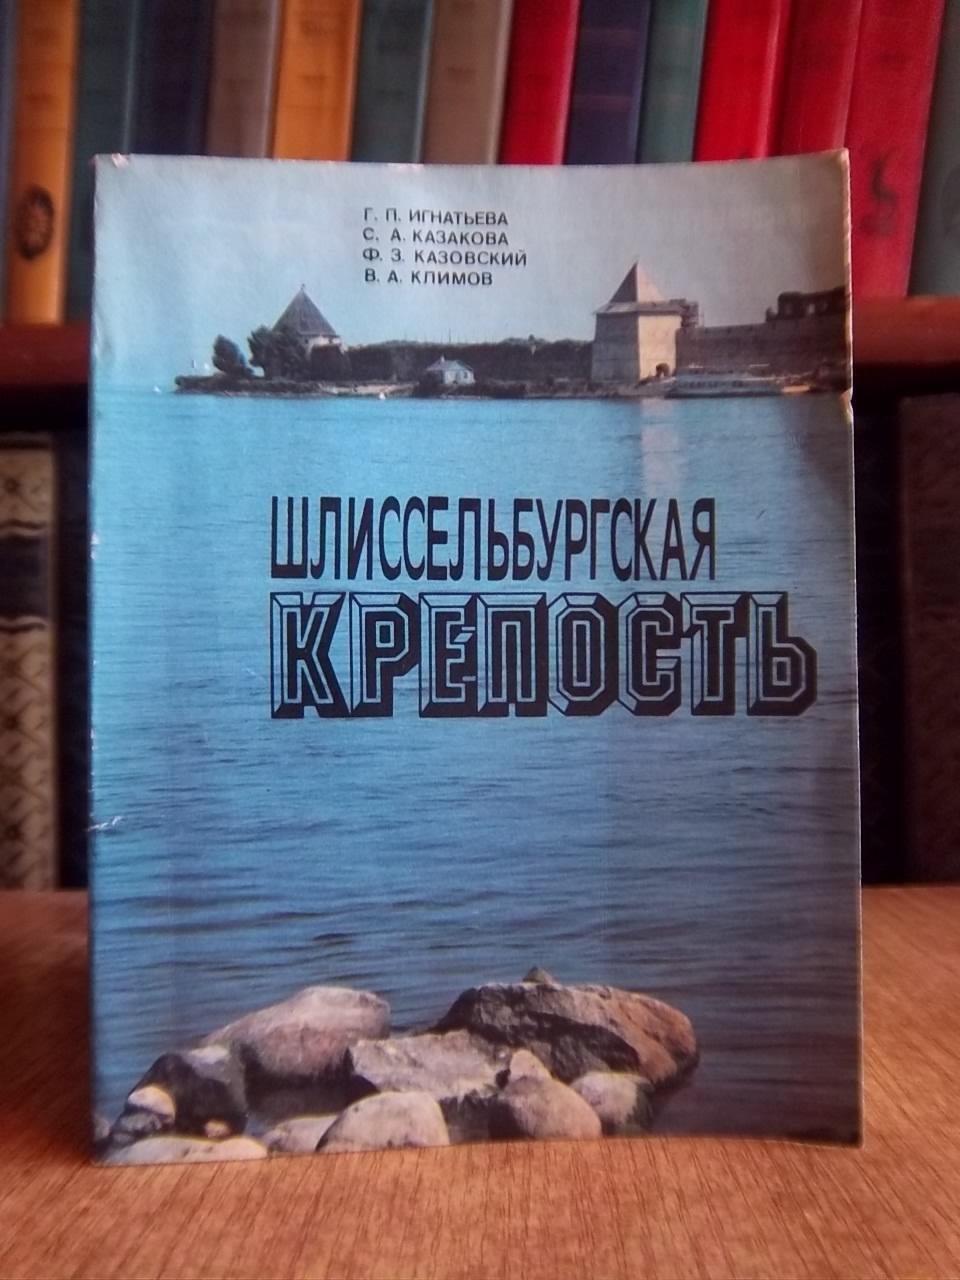 Игнатьева Г. и др.	Шлиссельбургская крепость. Очерк-путеводитель.